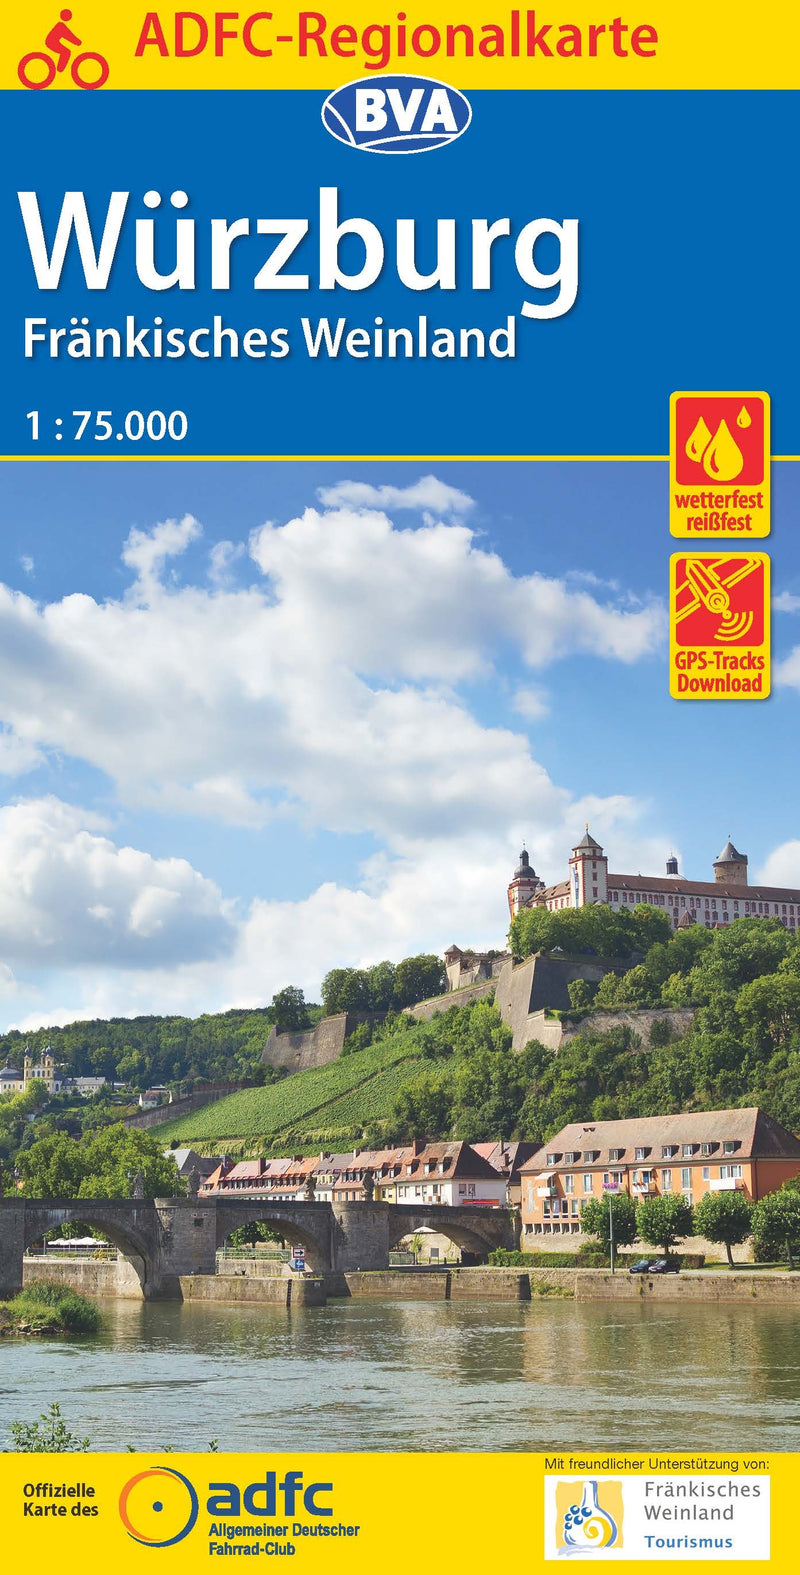 ADFC Regionalkarte Würzburg Fränkisches Weinland 1:75,000 (2016)